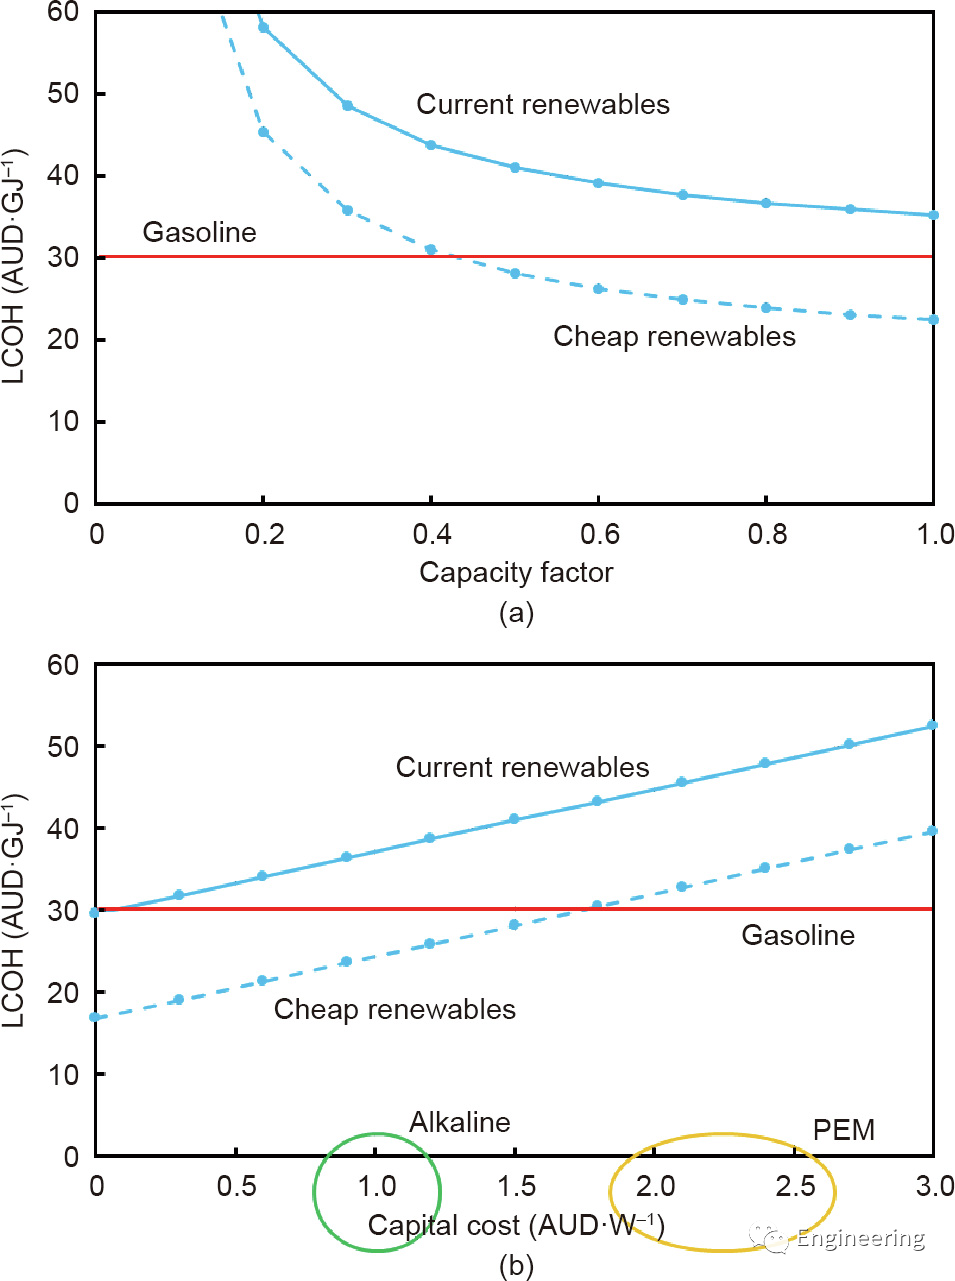 图1. 氢气的平均成本（LCOH）与碱性电解器的容量因子（a）和容量因子为75％的成本以及近似的碱性和PEM成本（b）。<br>